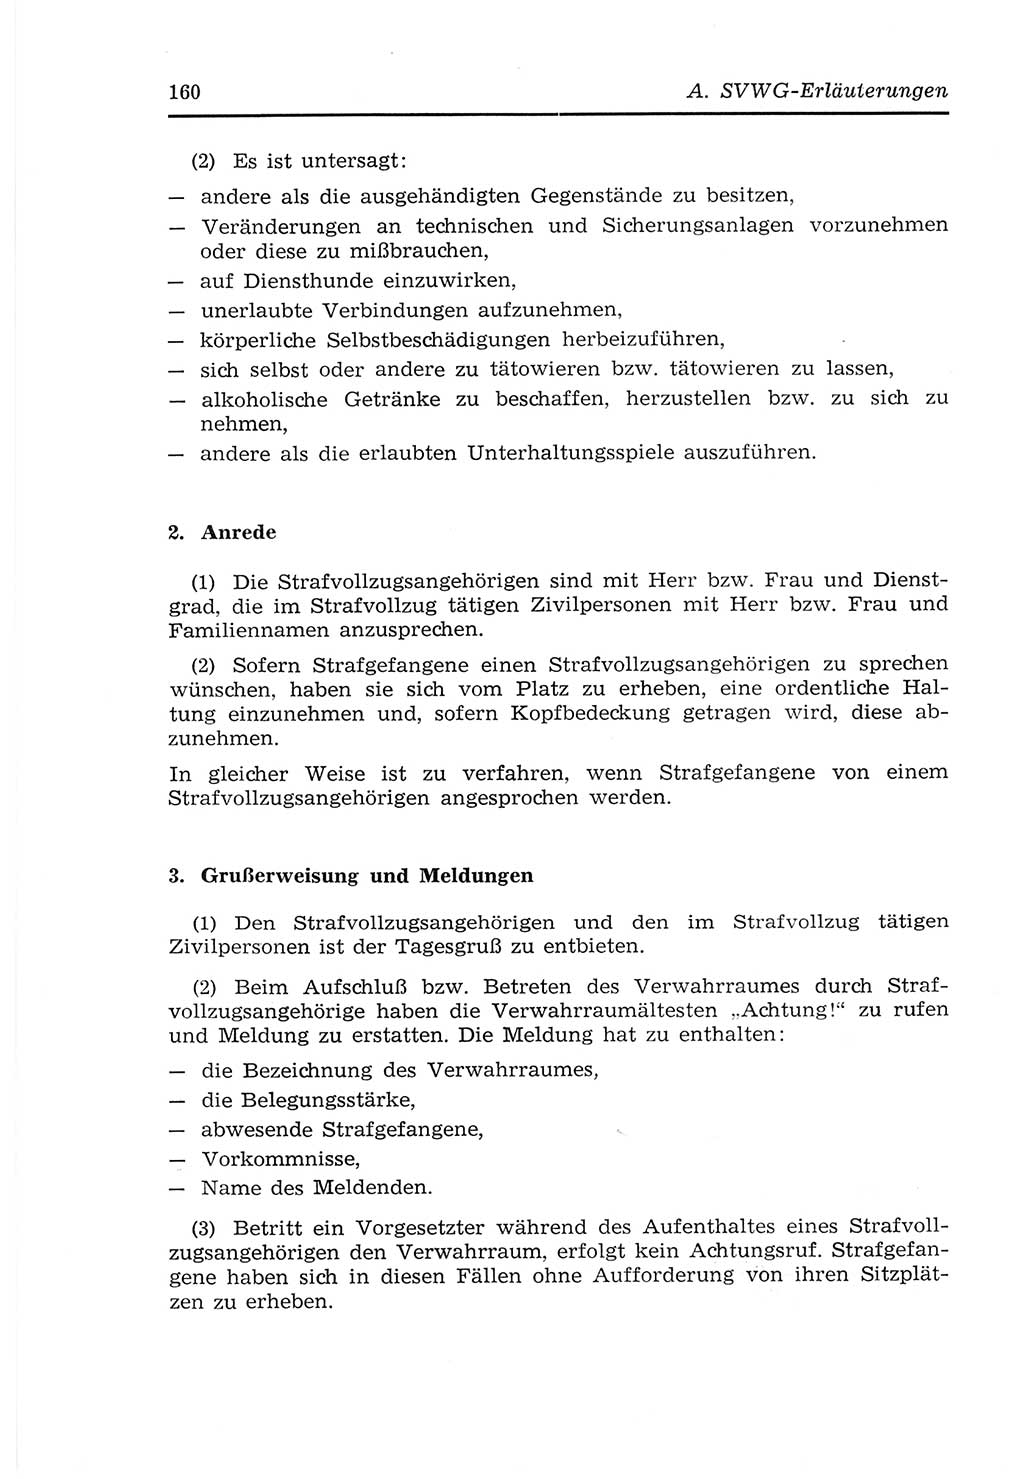 Strafvollzugs- und Wiedereingliederungsgesetz (SVWG) der Deutschen Demokratischen Republik (DDR) 1968, Seite 160 (SVWG DDR 1968, S. 160)